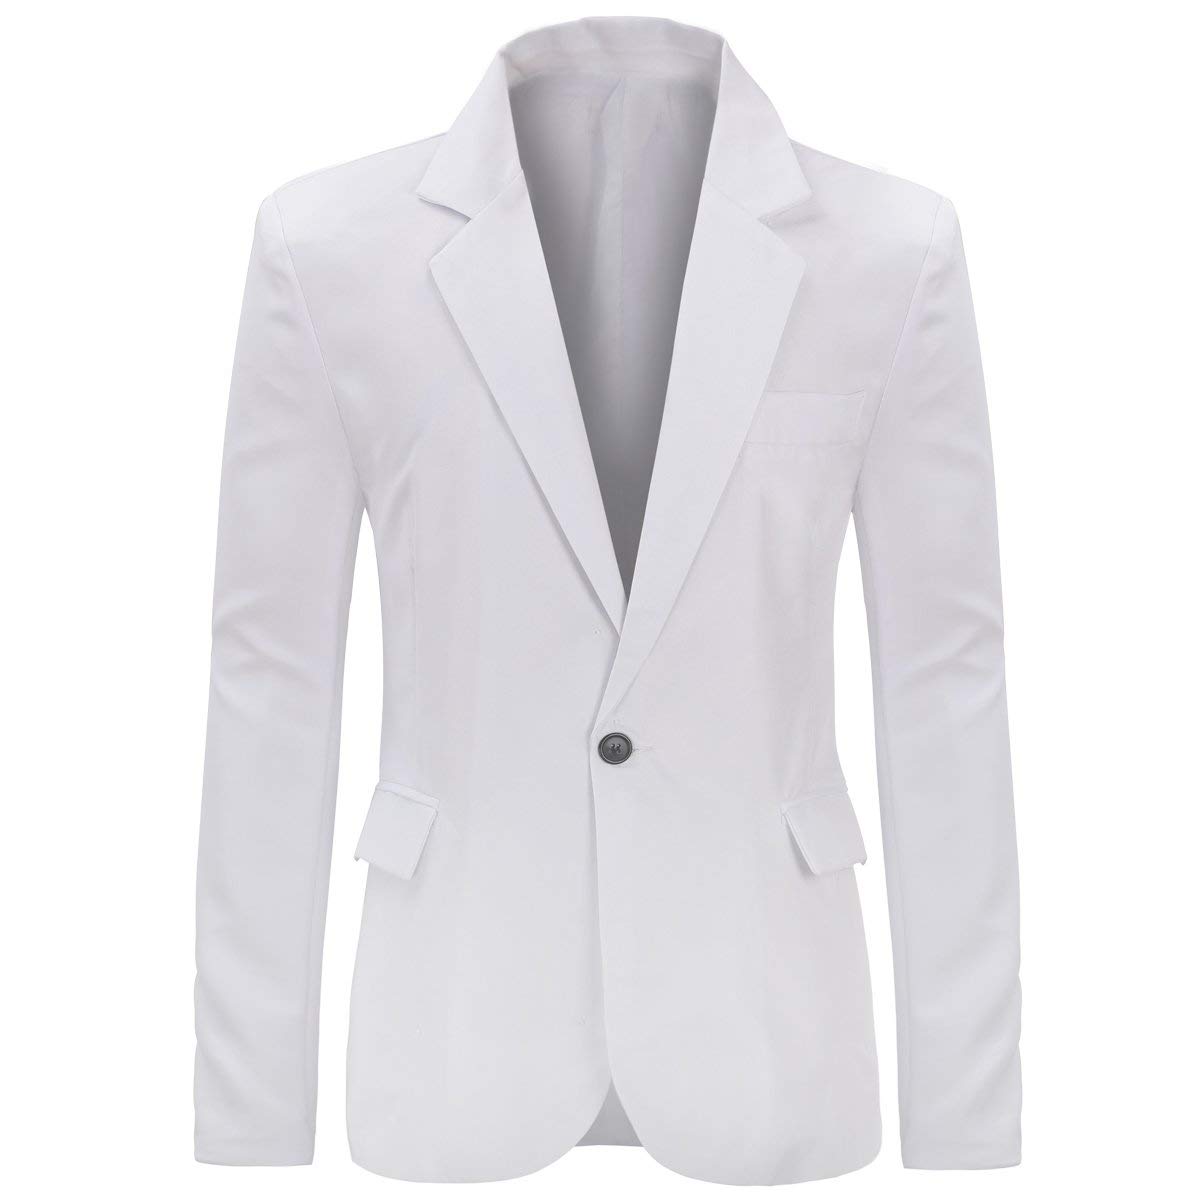 45 Ways to Style White Blazer for Men - Dress to Kill